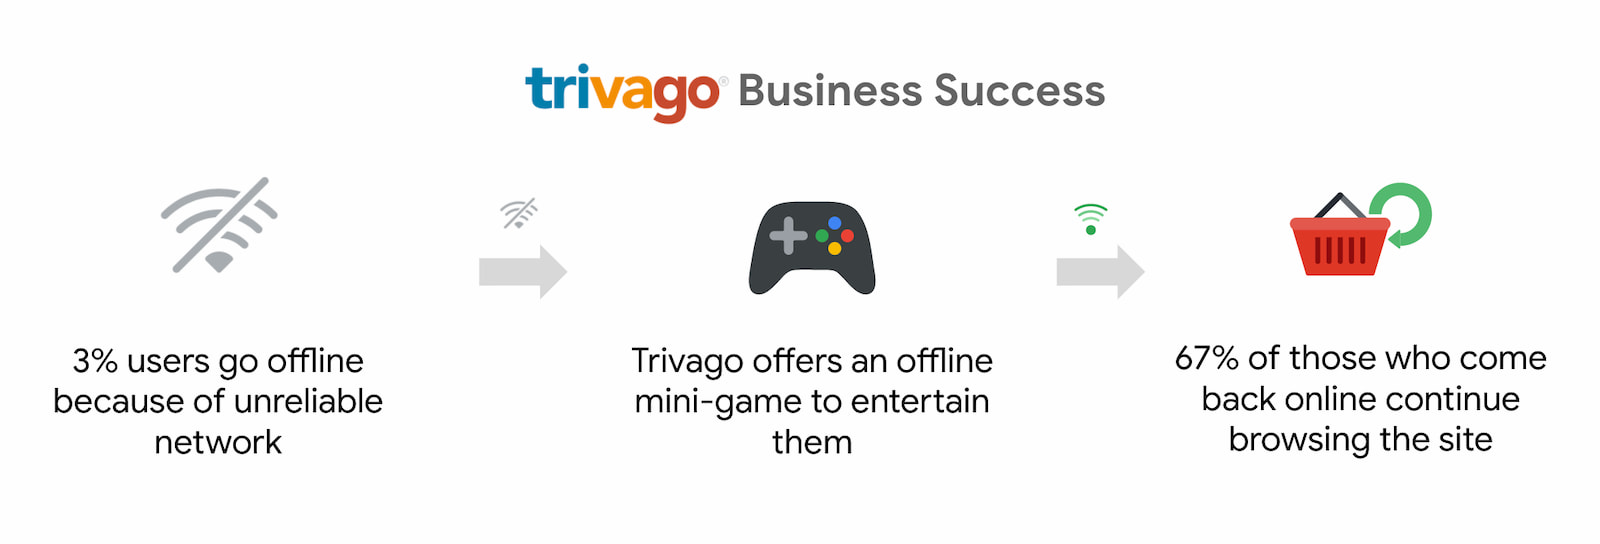 O Trivago teve um aumento de 67% no número de usuários que voltaram a ficar on-line e continuaram navegando.